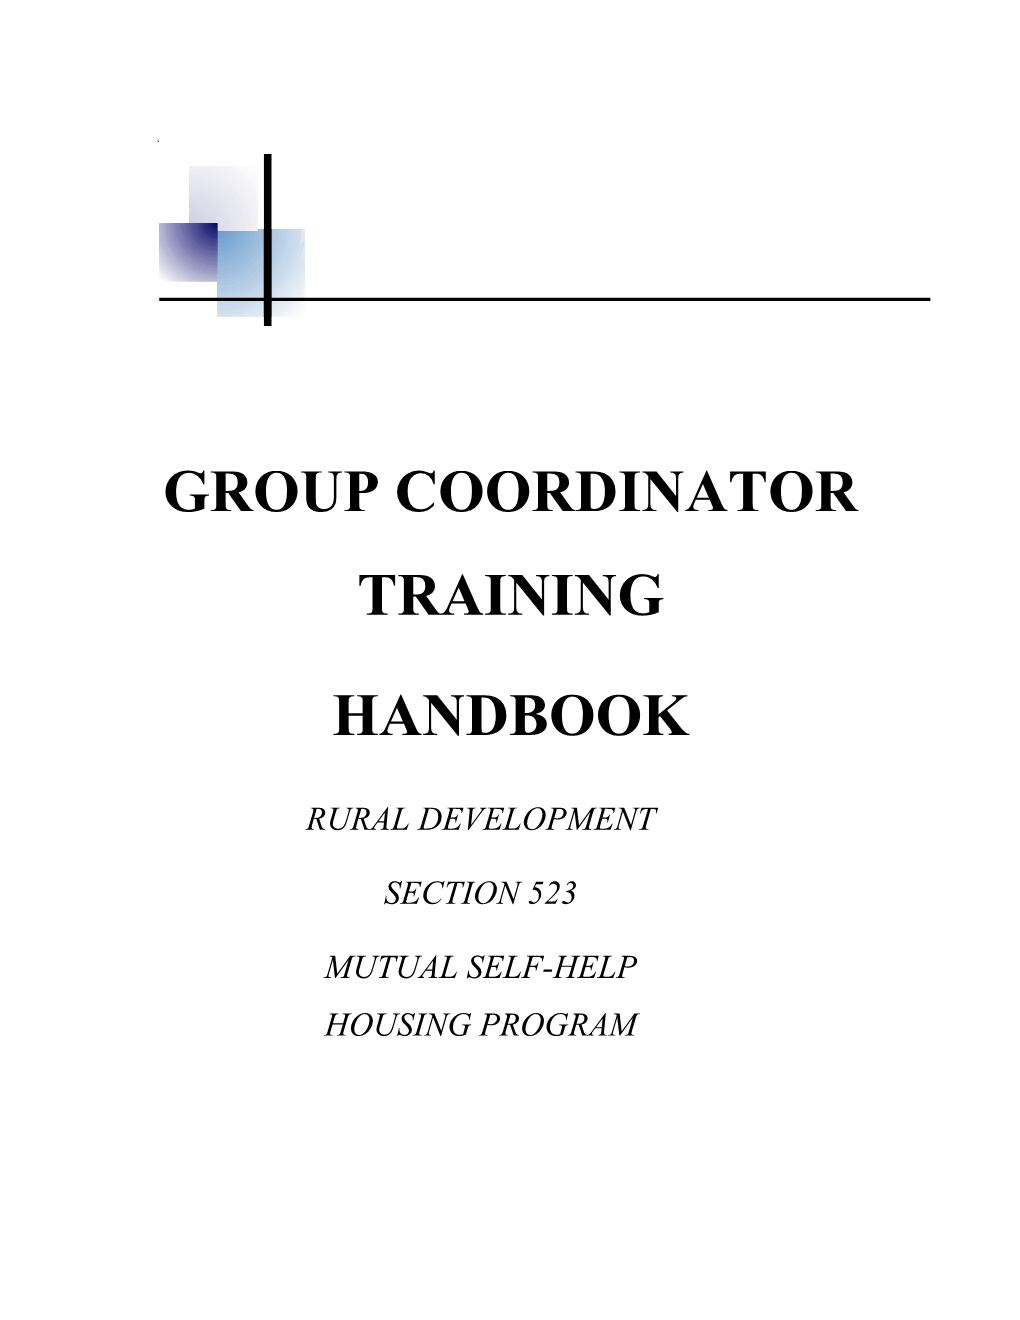 Group Coordinator Training Handbook February 1, 2019